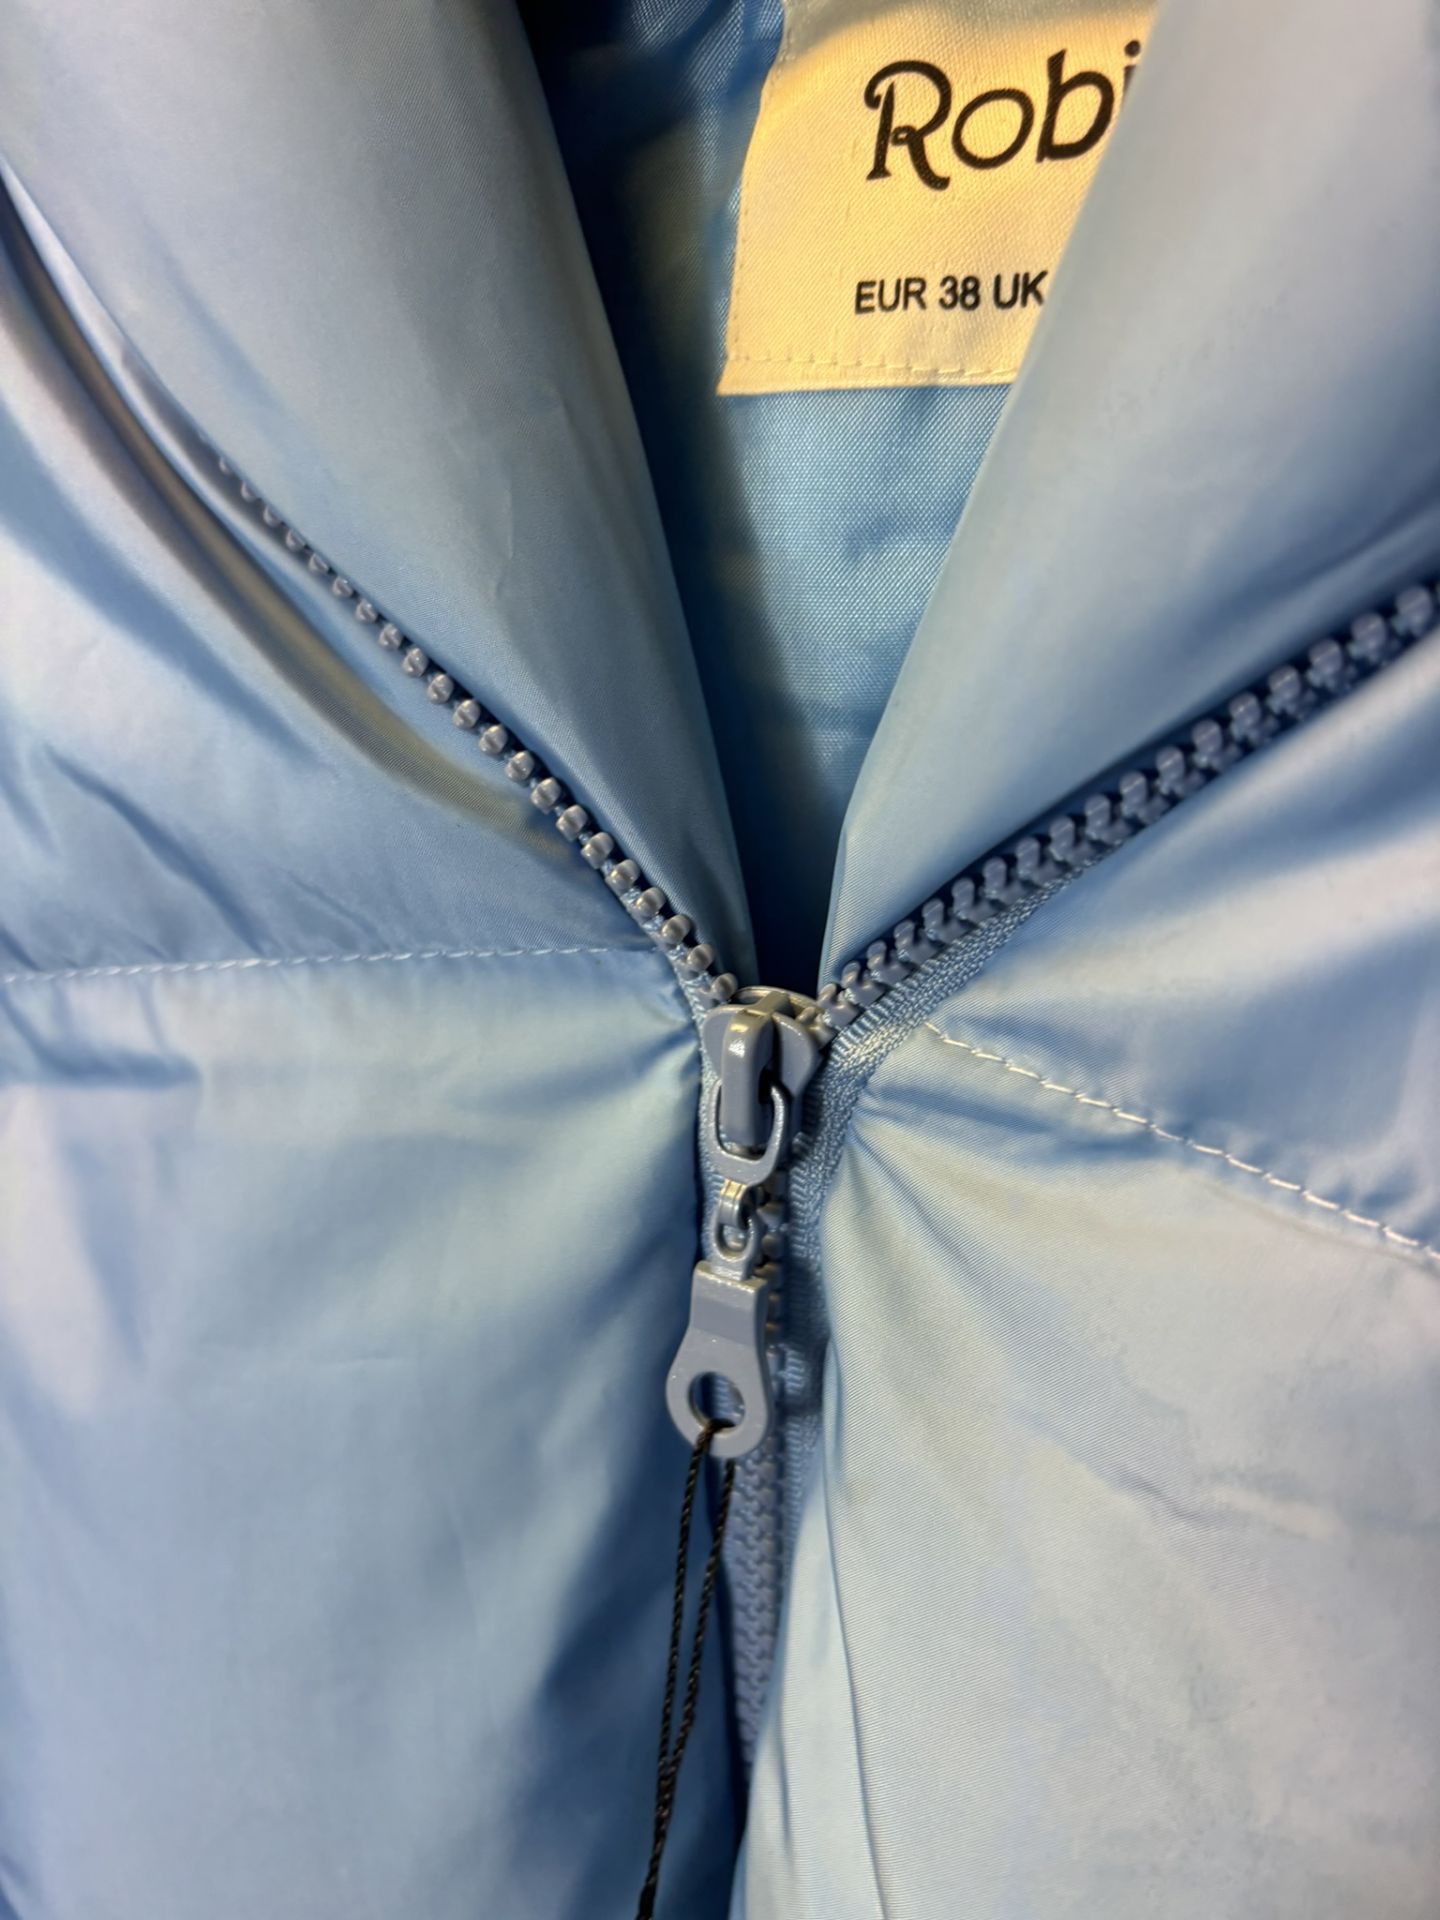 Robin Medium Light Blue Short Vest With Hood, size UK8/EUR 38 - Image 4 of 6